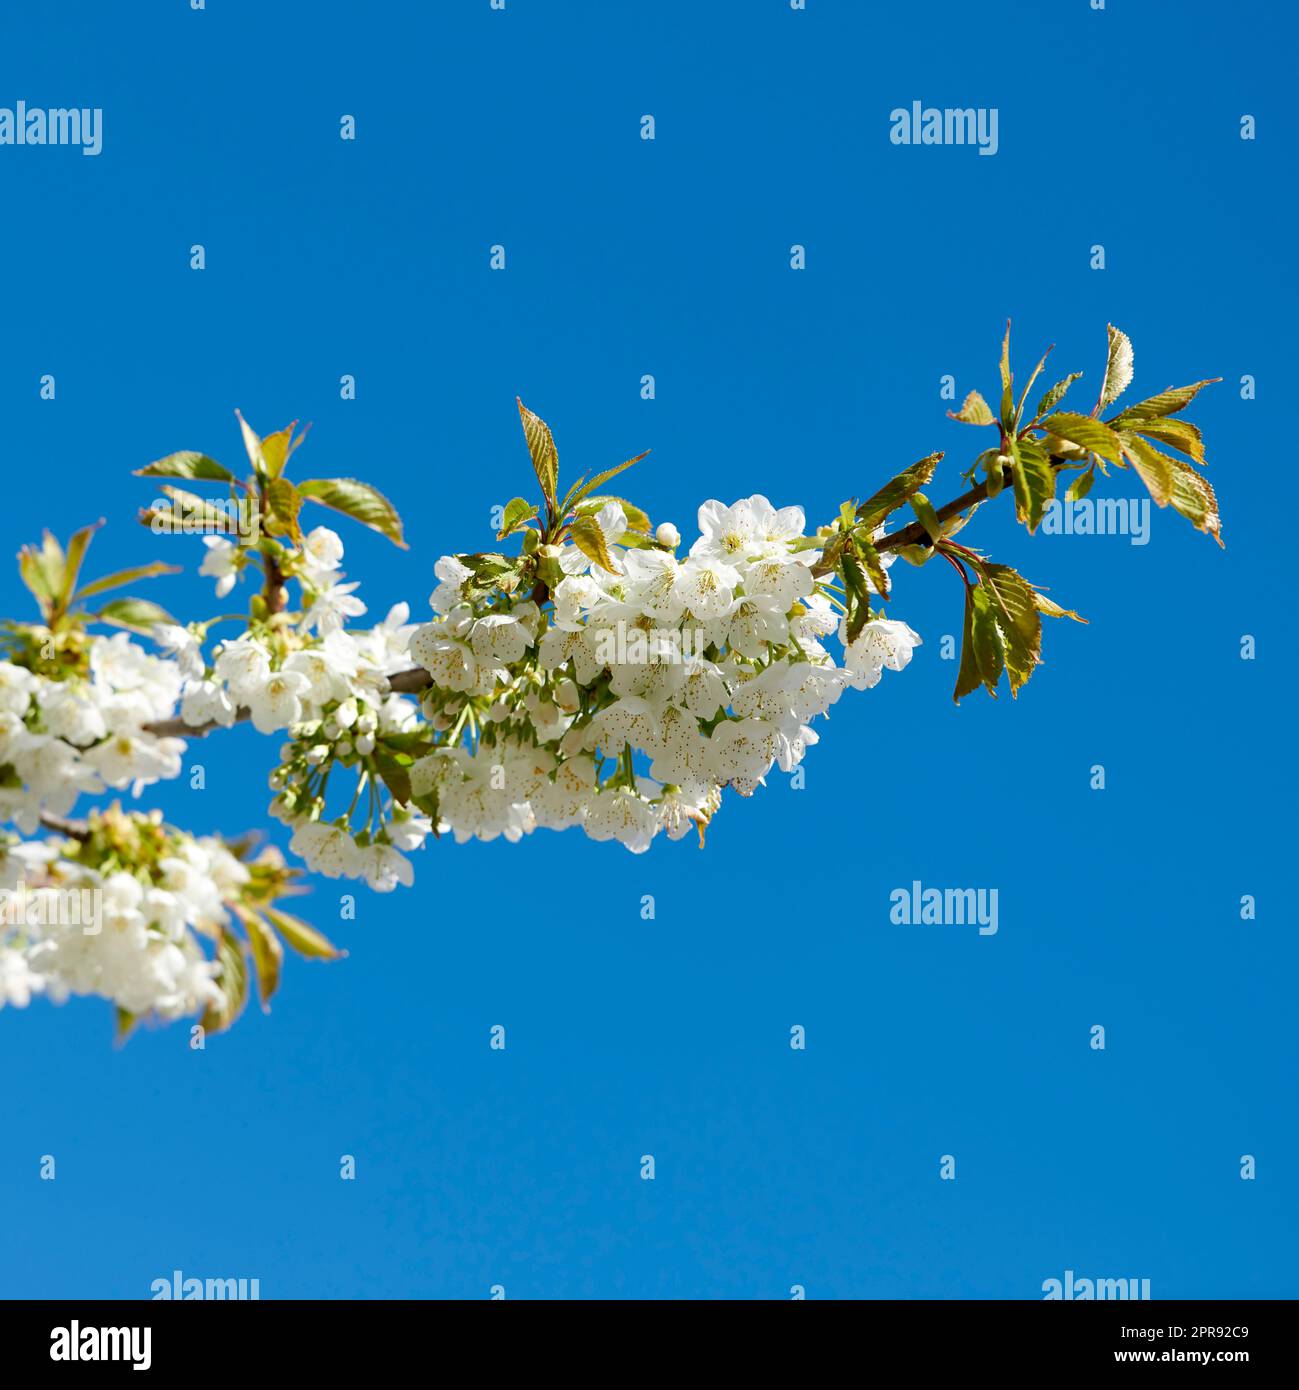 Vue sur les fleurs blanches qui poussent sur une tige de cerisier ou de pommier dans un verger de fruits d'en haut. Groupe de fleurs et feuilles de printemps fraîches délicates isolées sur fond bleu ciel pour l'espace de copie Banque D'Images